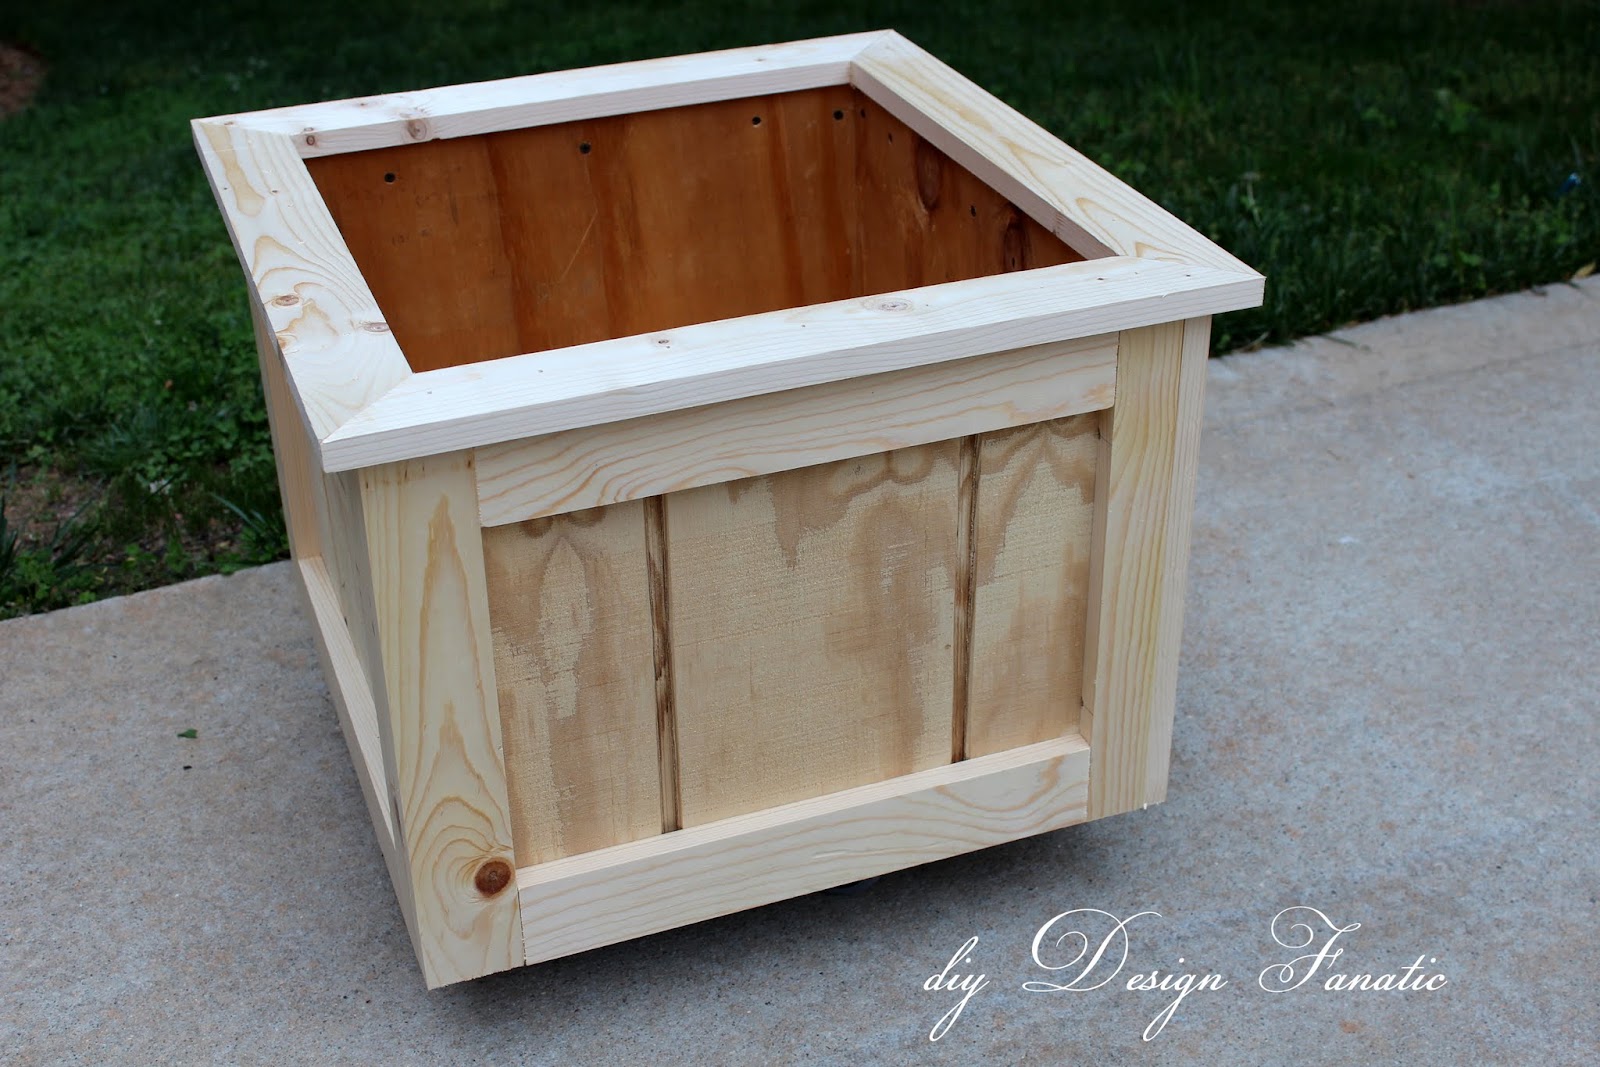 diy Design Fanatic: How To Make A Wood Planter Box